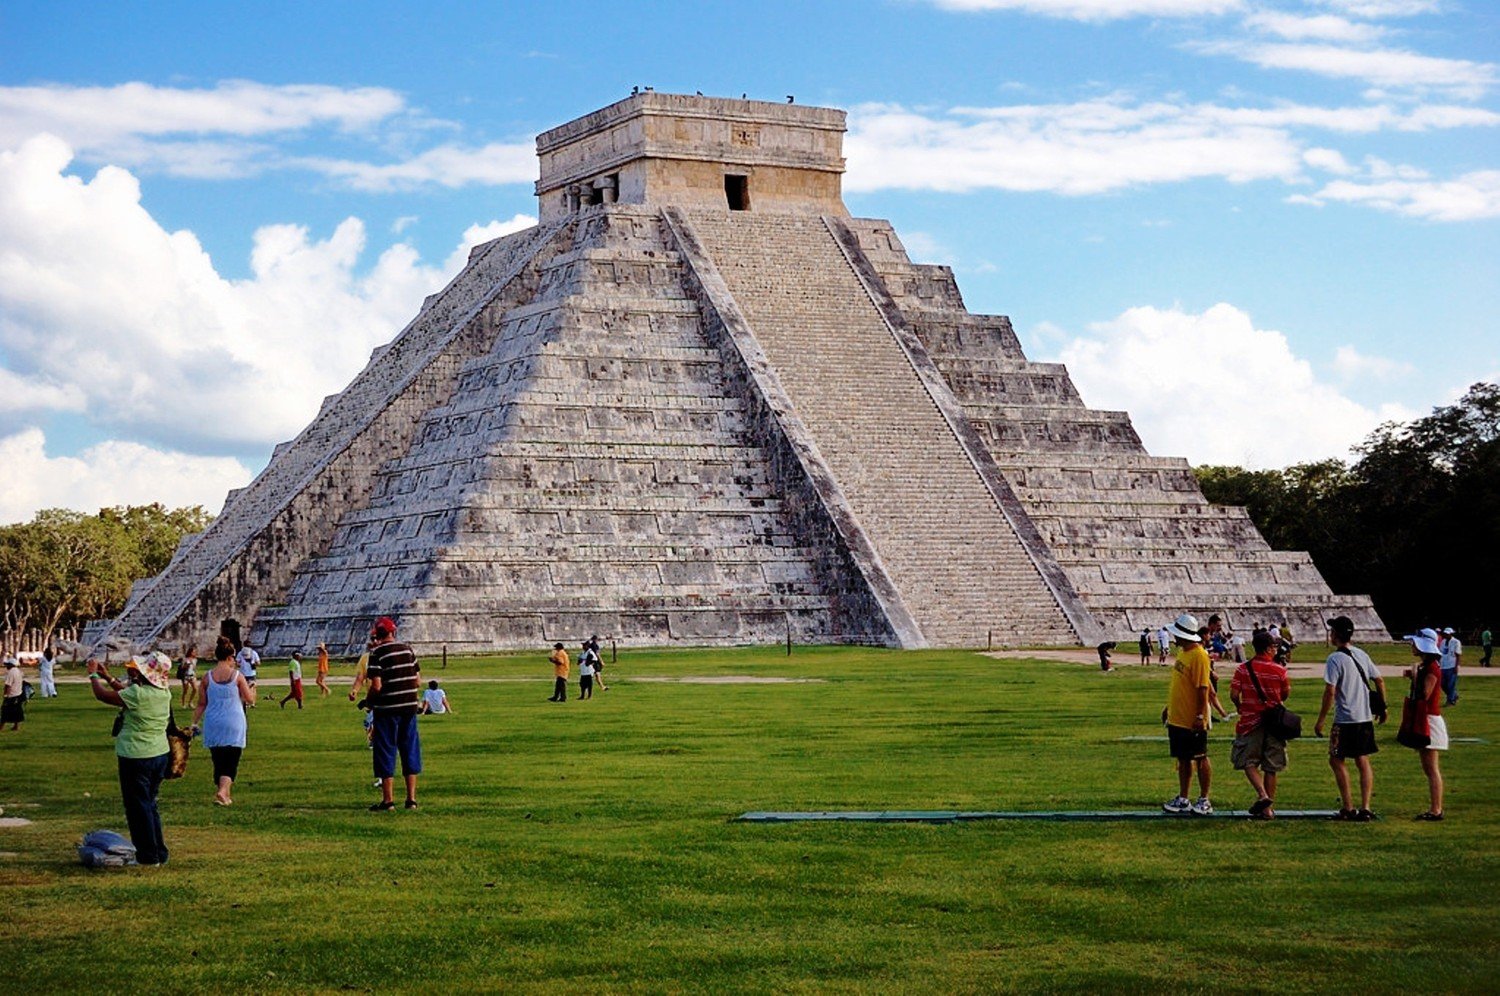 Туризм в мексике. Мексика Мехико Канкун. Чичен ица озеро. Мексика пирамиды Майя туристическое место. Мехико достопримечательности Мехико.